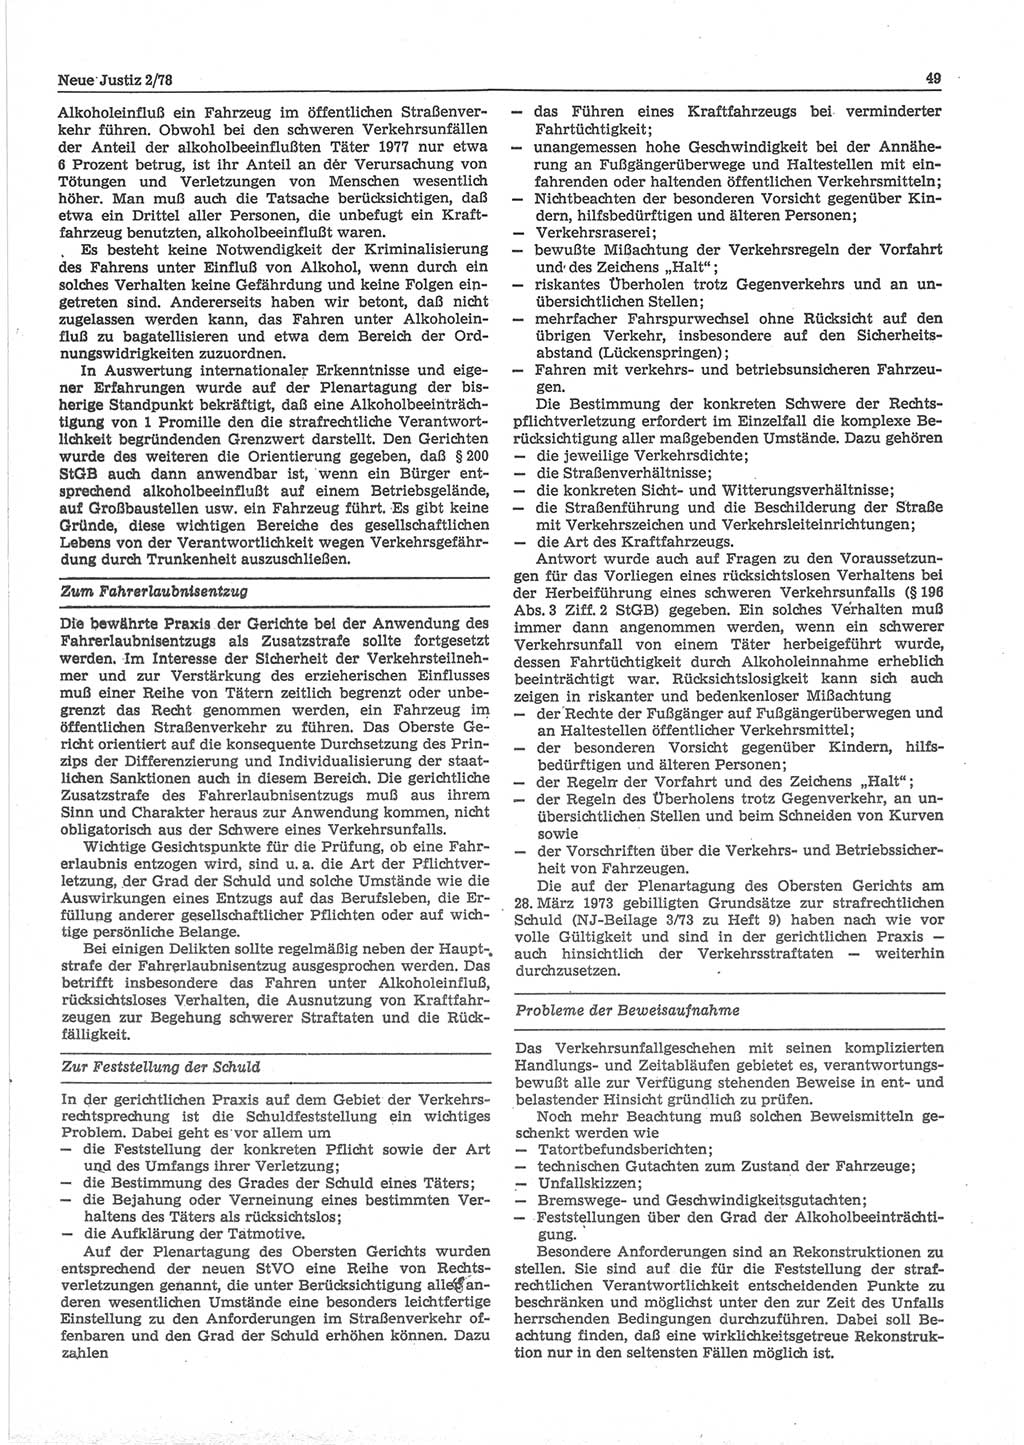 Neue Justiz (NJ), Zeitschrift für sozialistisches Recht und Gesetzlichkeit [Deutsche Demokratische Republik (DDR)], 32. Jahrgang 1978, Seite 49 (NJ DDR 1978, S. 49)